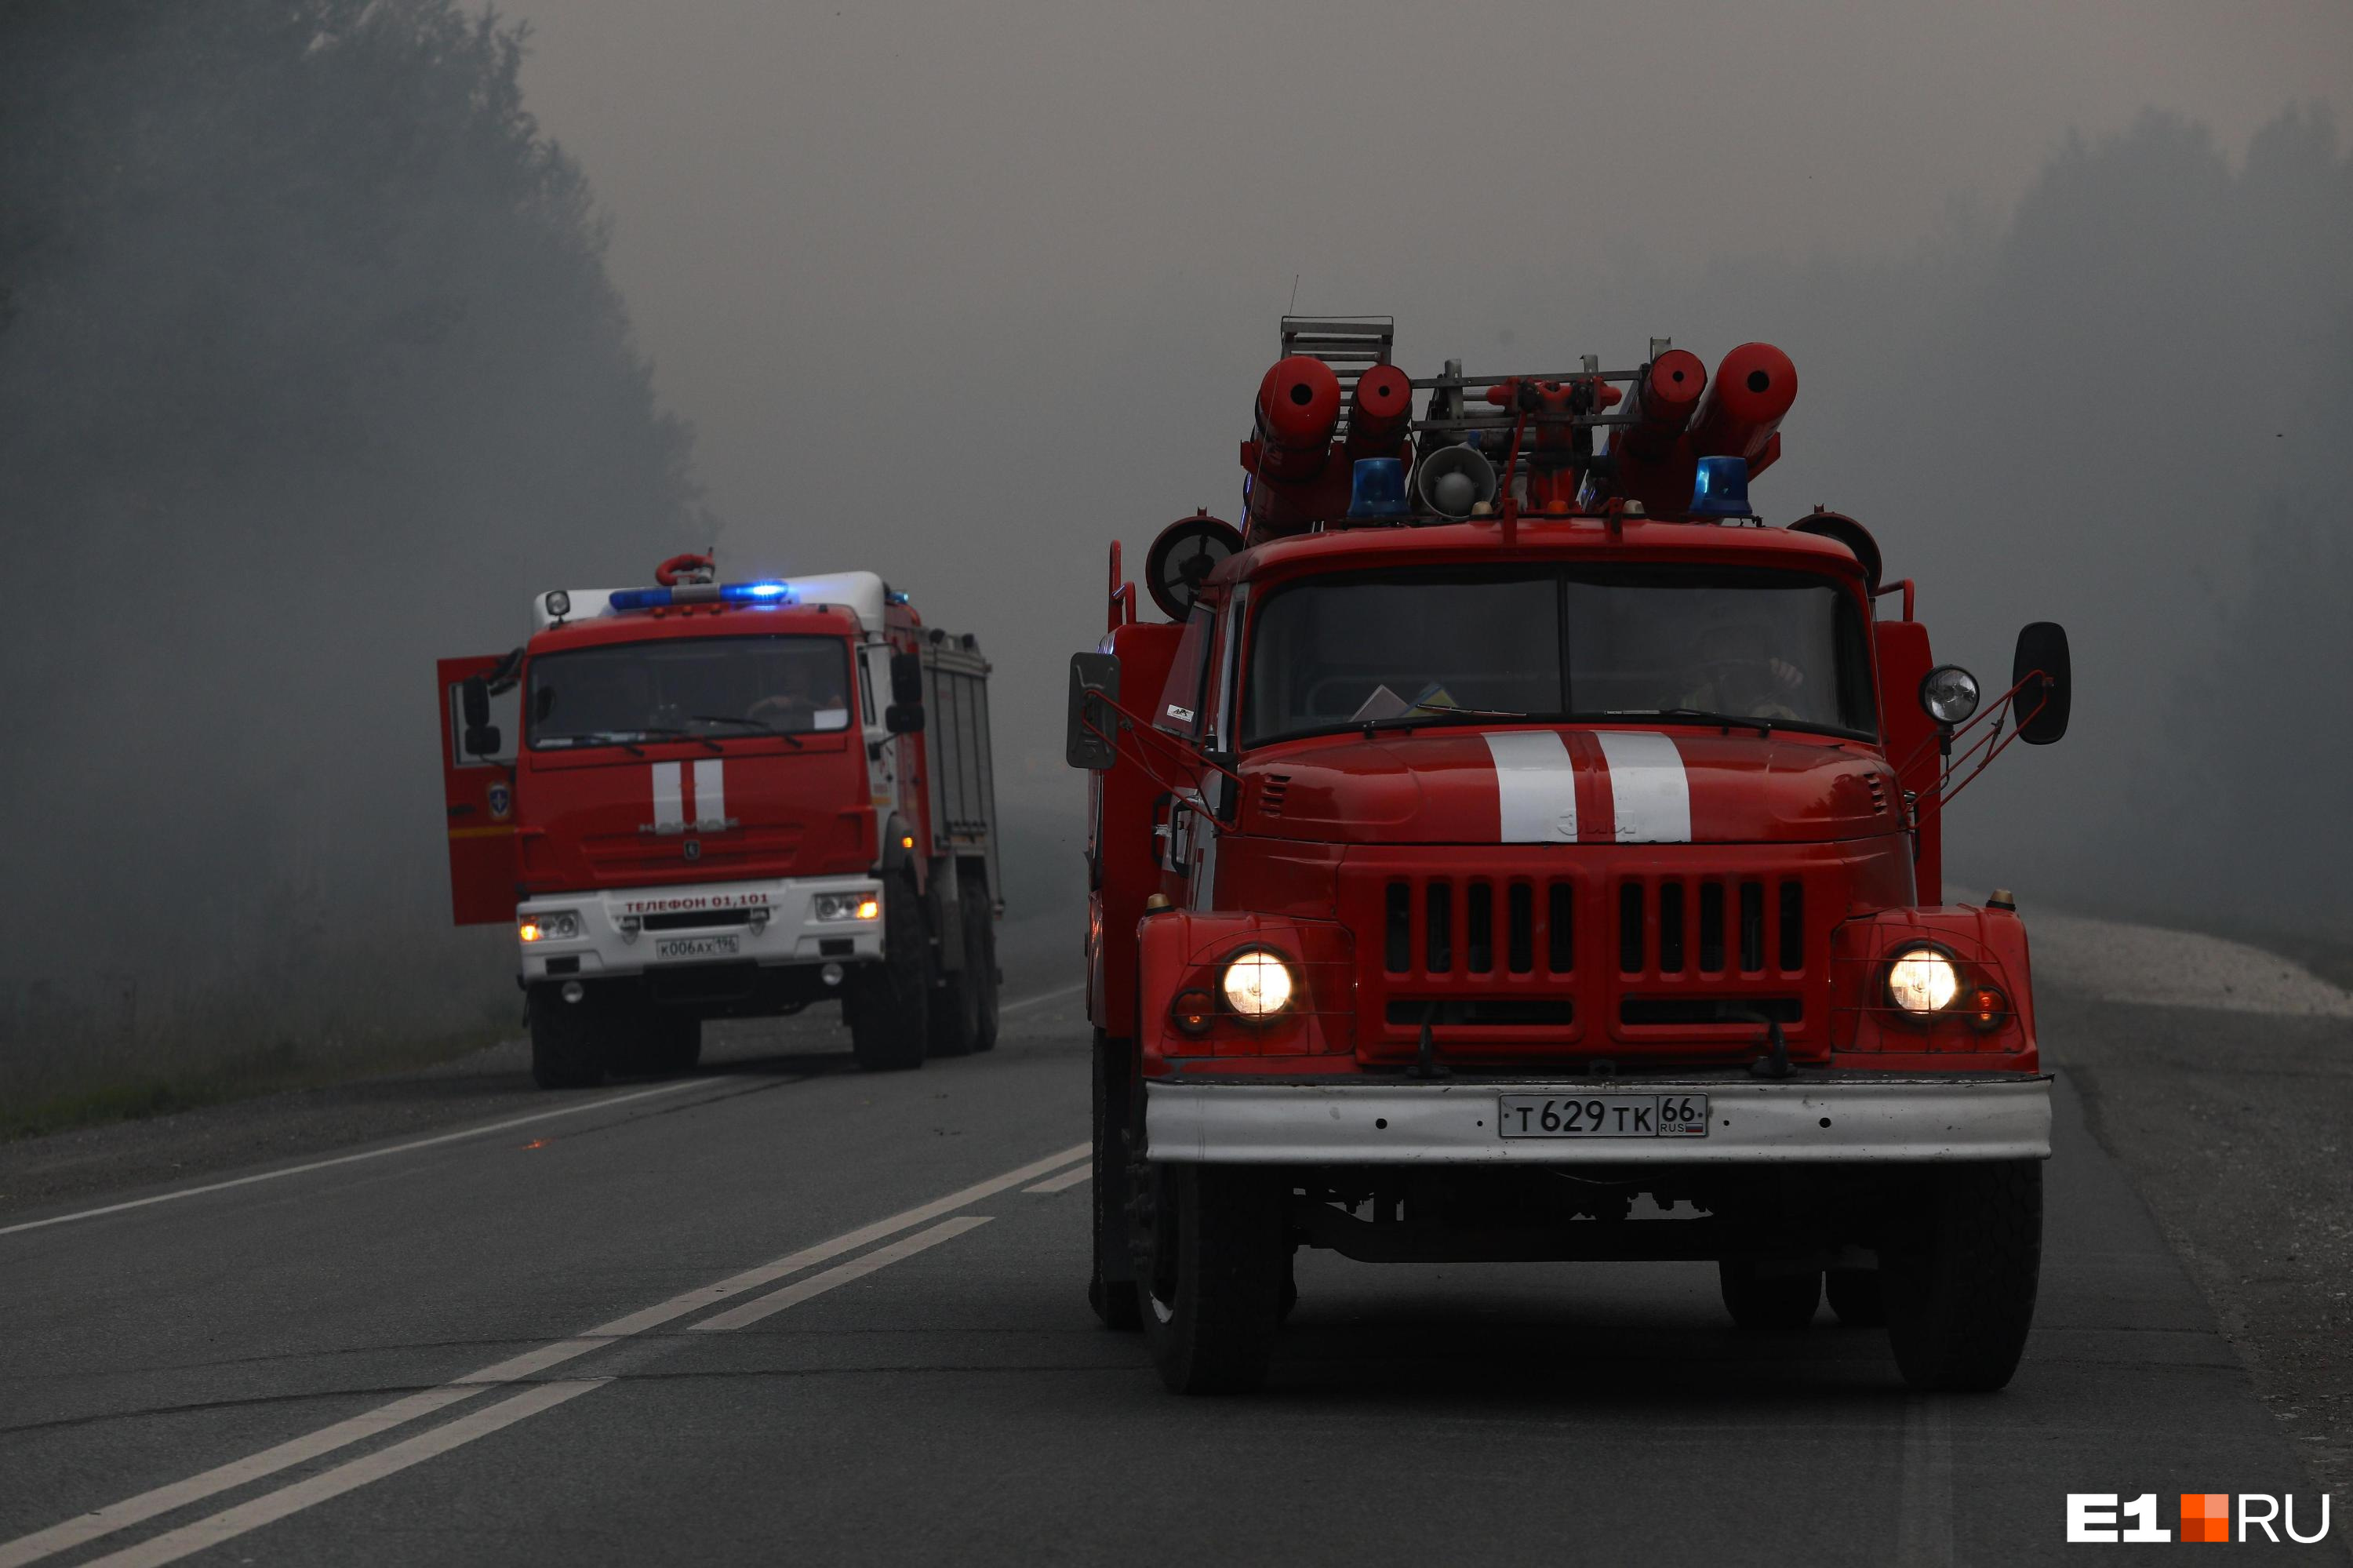 Около сотни человек отправились на тушение пожара в Читинском районе Забайкалья